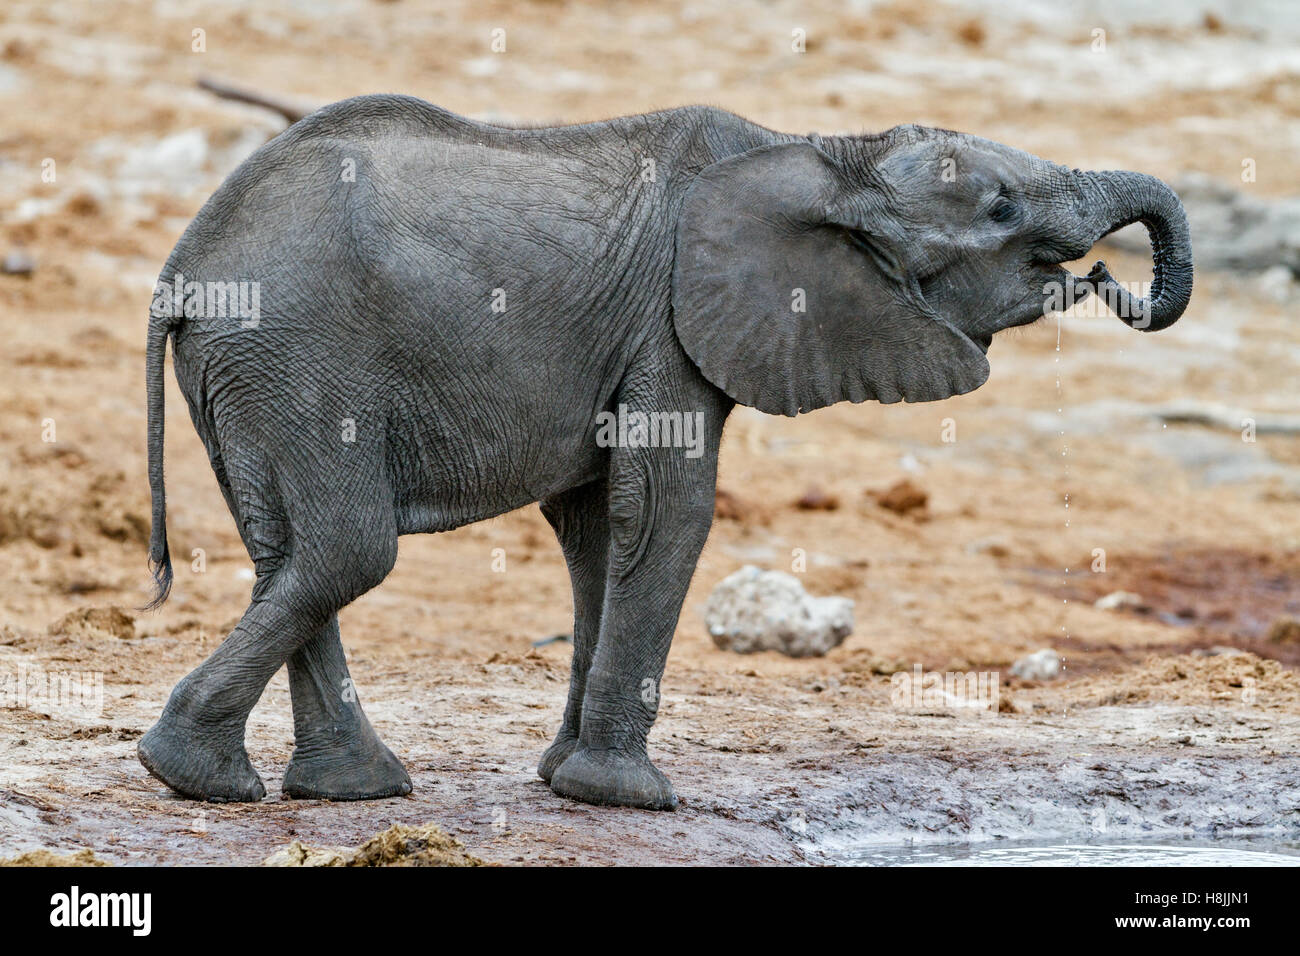 Parte di una serie di immagini che documentano le complesse interazioni sociali dell'elefante africano si radunano per bere. Foto Stock